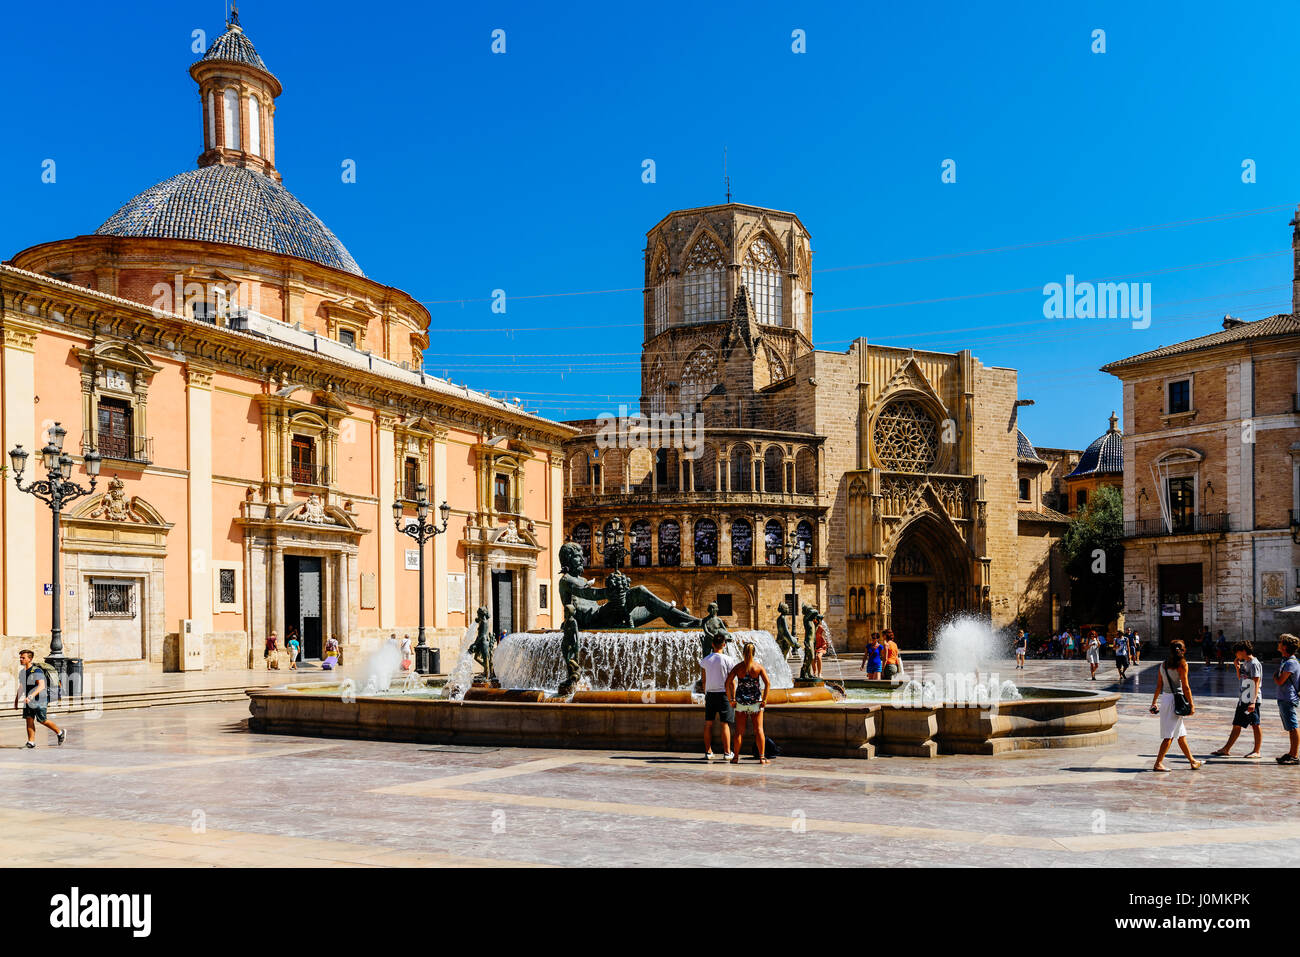 VALENCIA, Spanien - 1. August 2016: Plaza De La Virgen (Domplatz) ist ein großer Platz in Valencia befindet sich in zentraler Lage der Stadt. Stockfoto